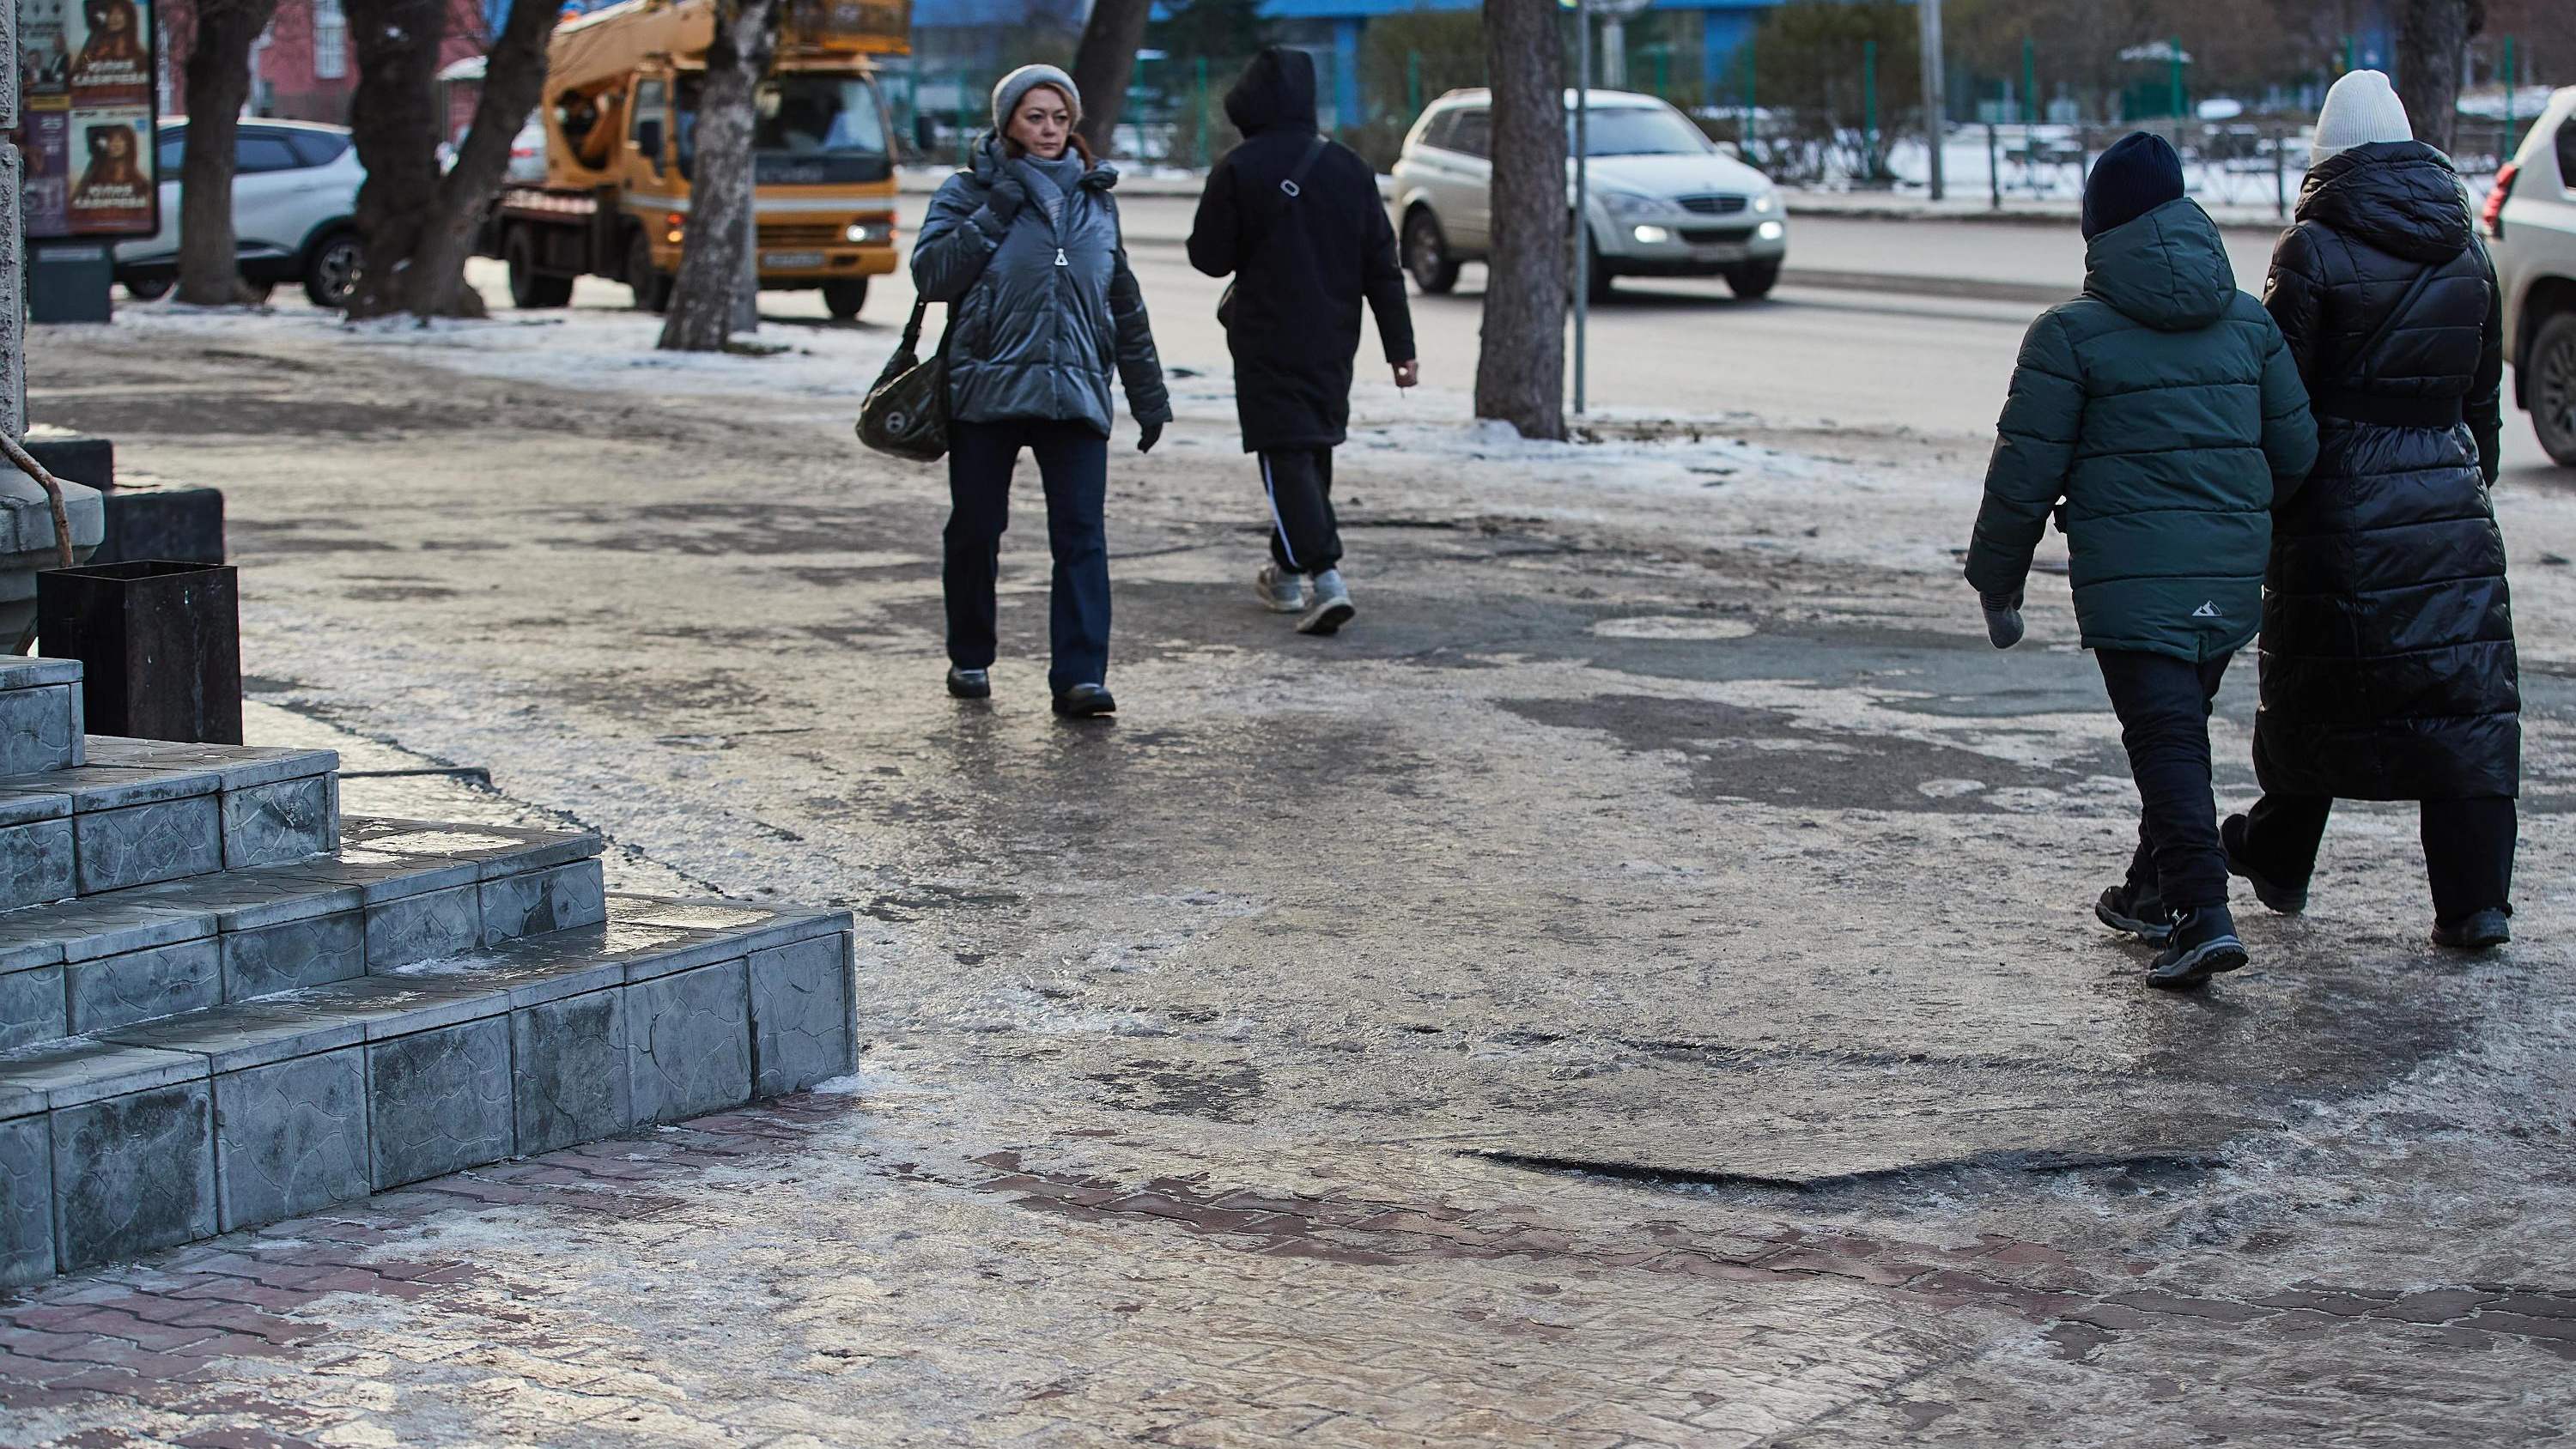 Надвигается холод: когда зима придет в Новосибирск — изучаем прогнозы на следующую рабочую неделю